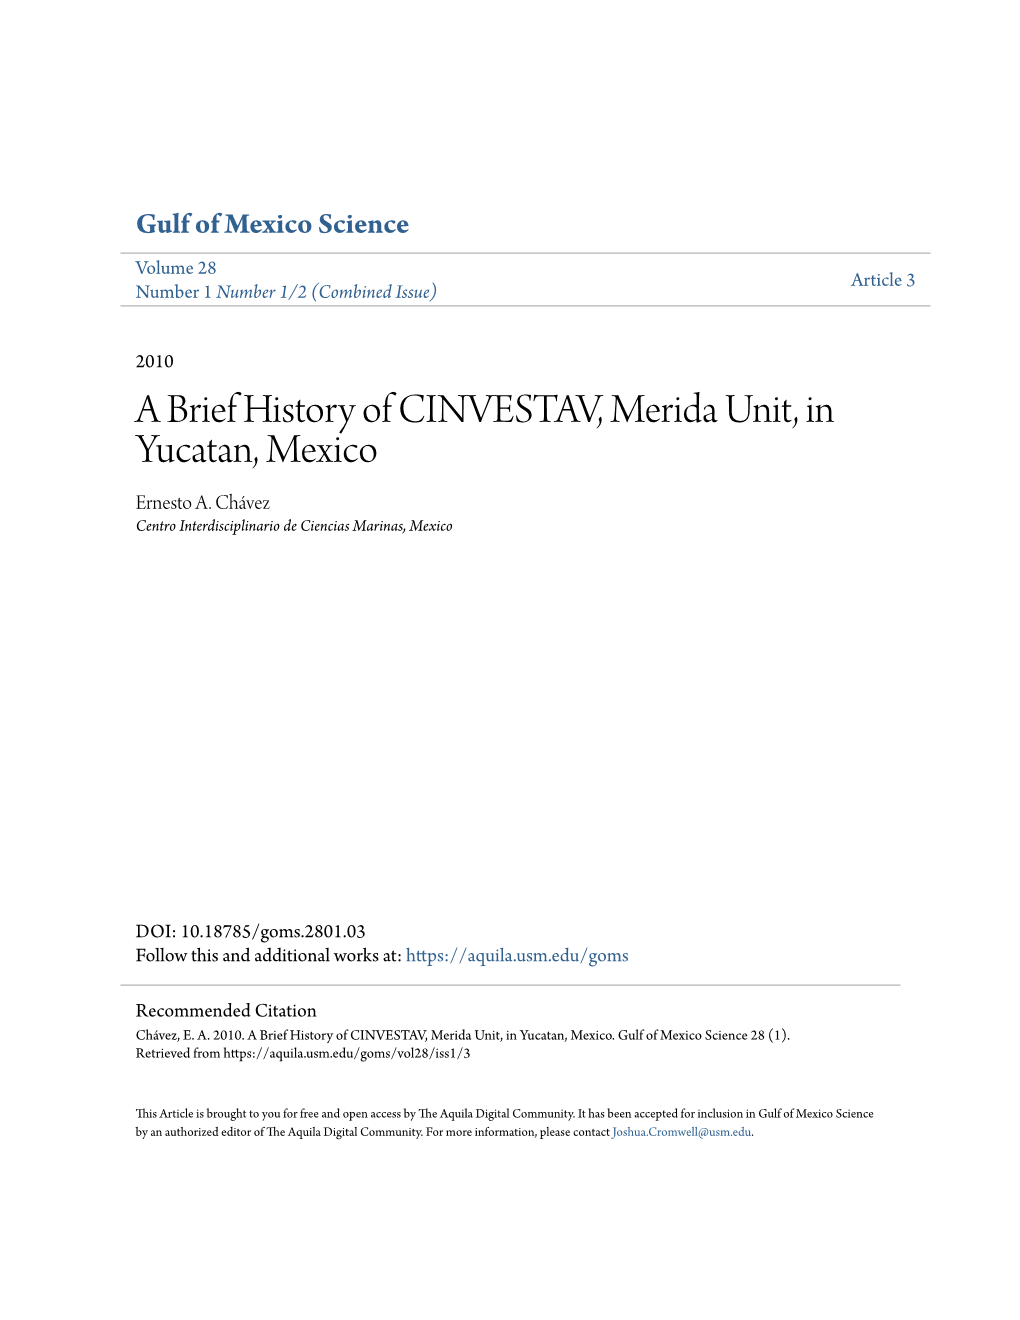 A Brief History of CINVESTAV, Merida Unit, in Yucatan, Mexico Ernesto A